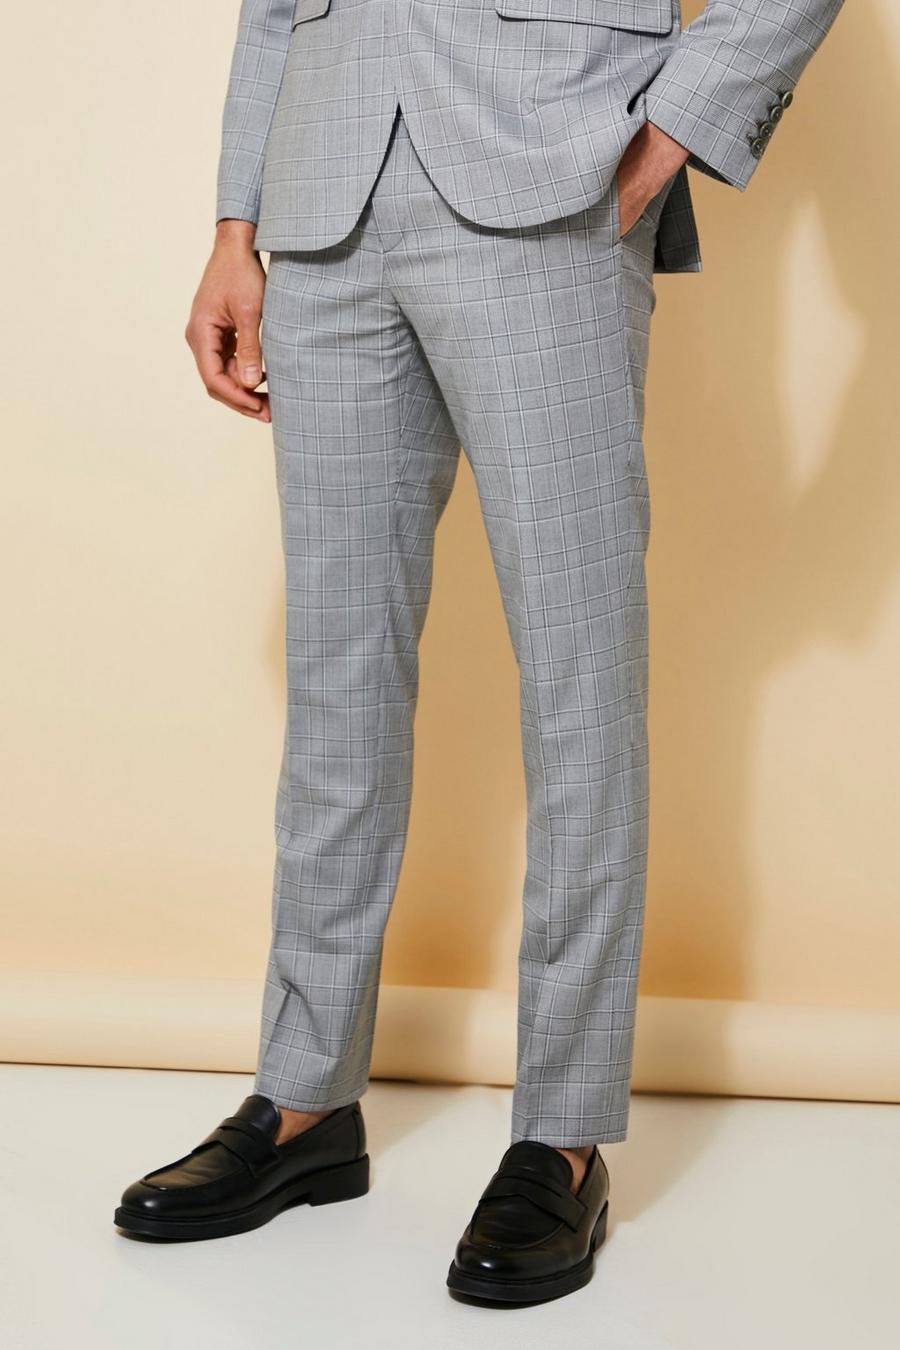 אפור grey מכנסיים לחליפה עם הדפס משבצות בגזרה צרה image number 1